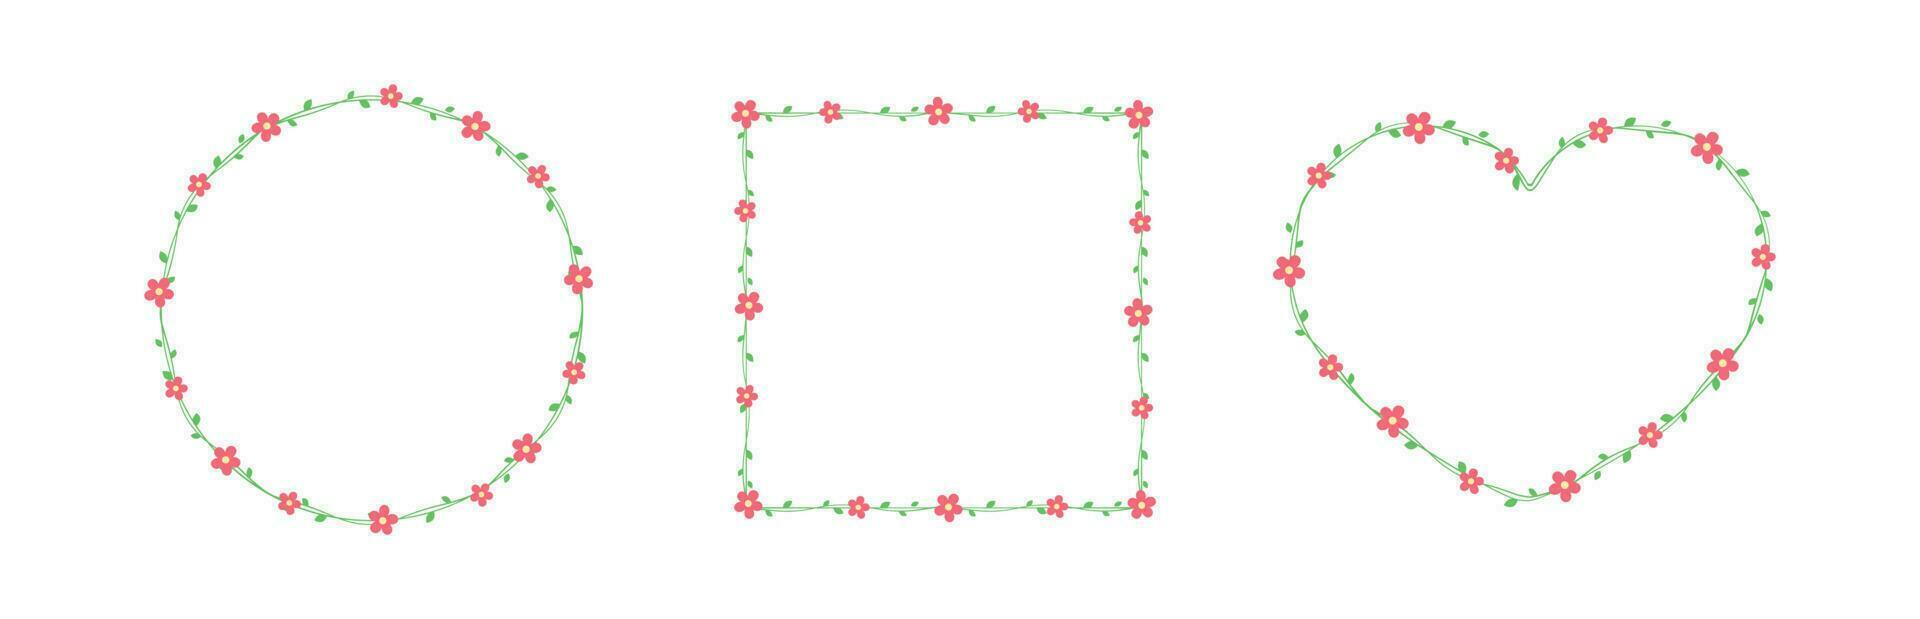 rot Blumen mit Grün Blätter Frames und Grenzen Satz, Blumen- botanisch Design Element Vektor Illustration